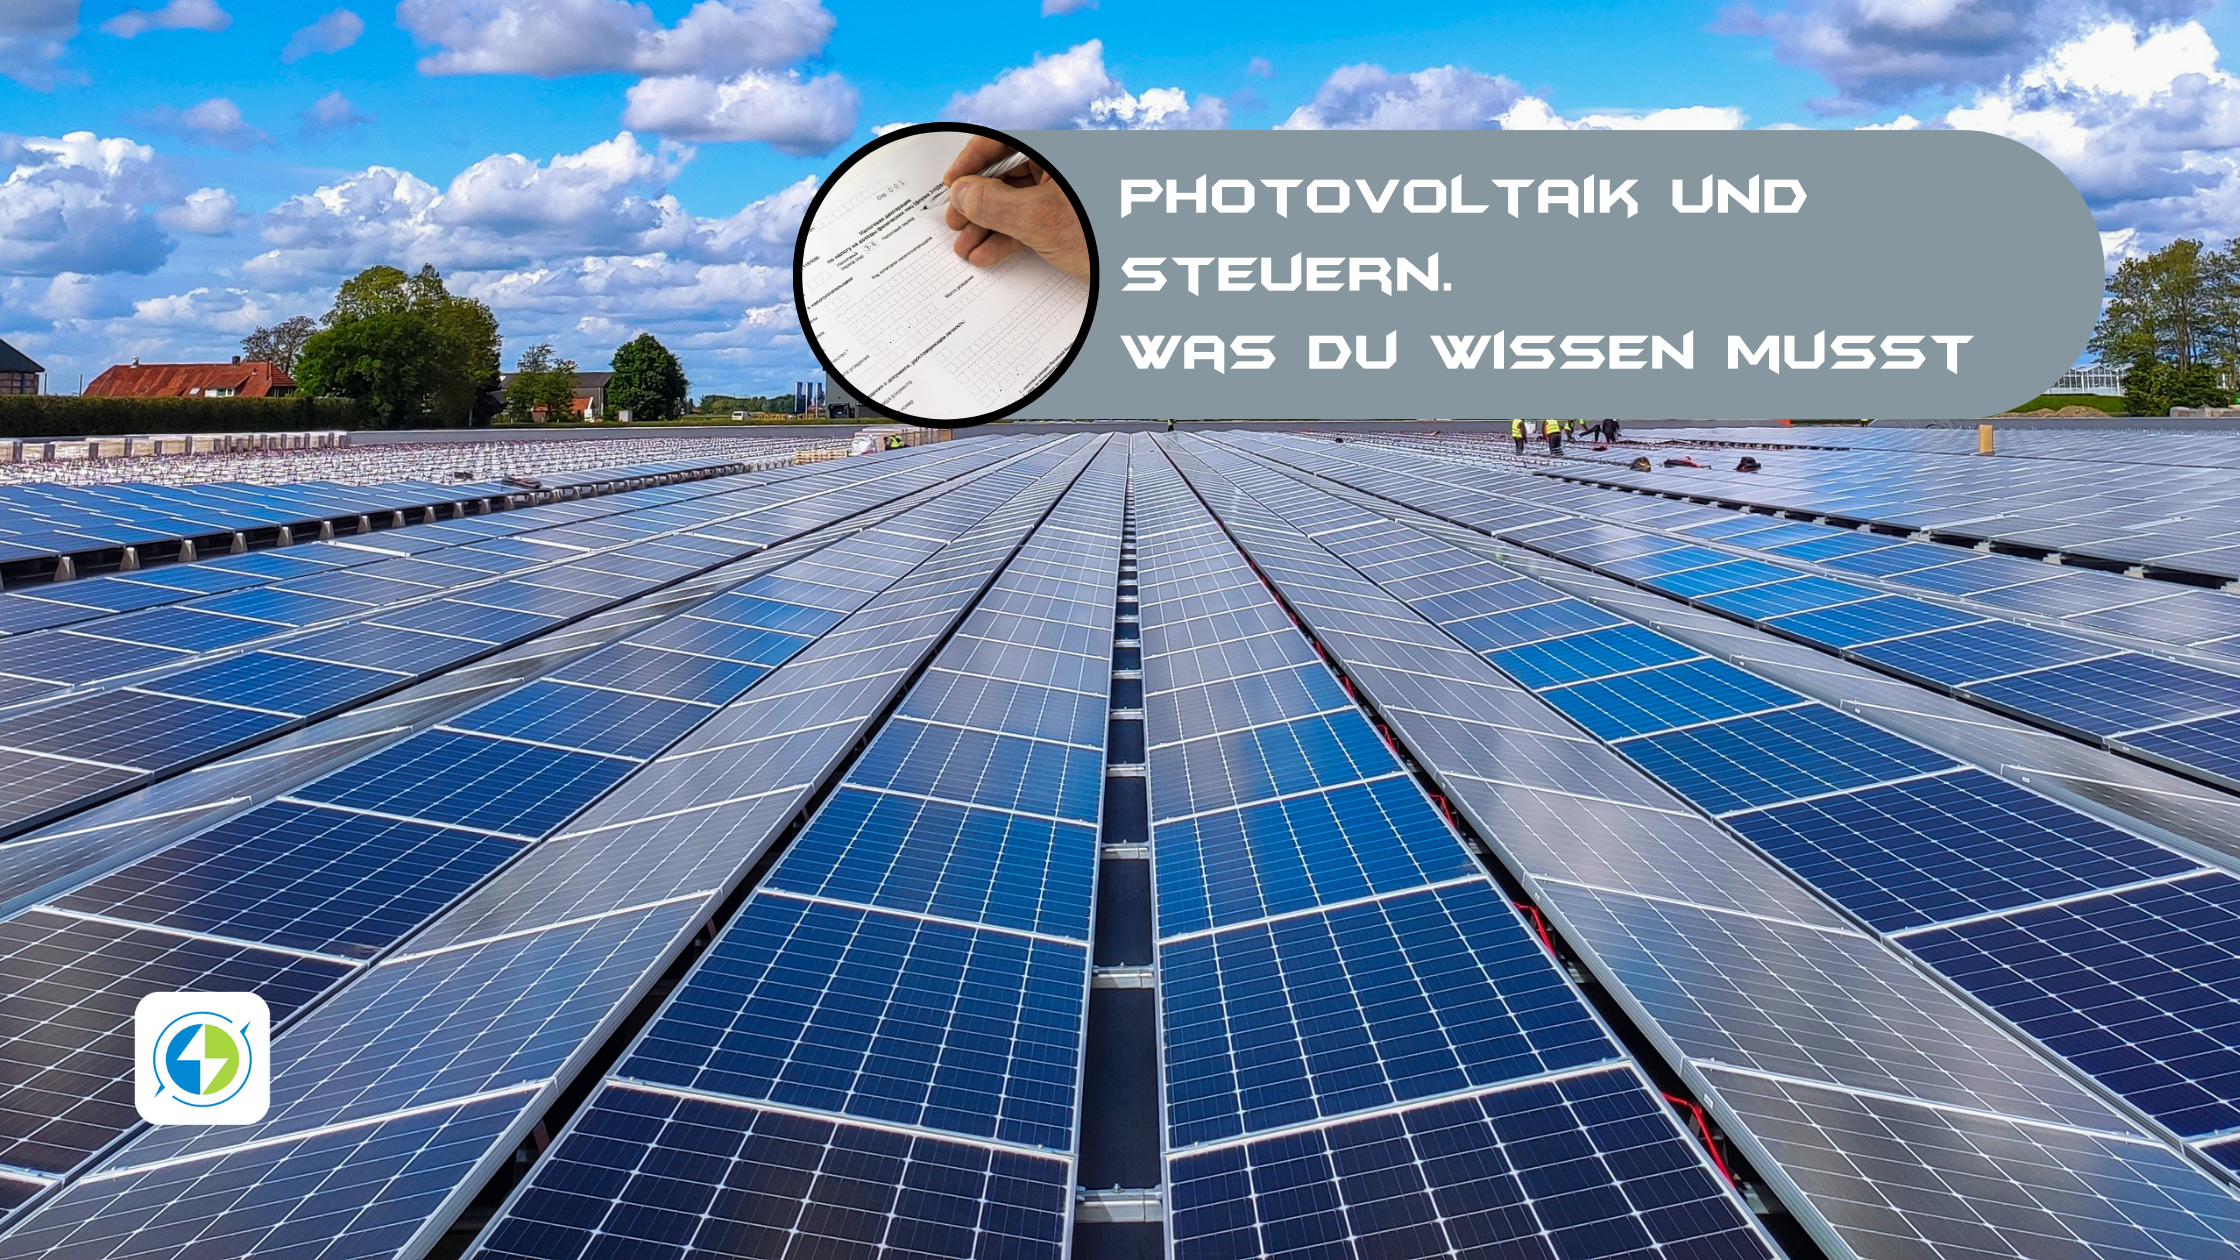 Photovoltaik Steuer: So läuft es bei der PV-Anlage